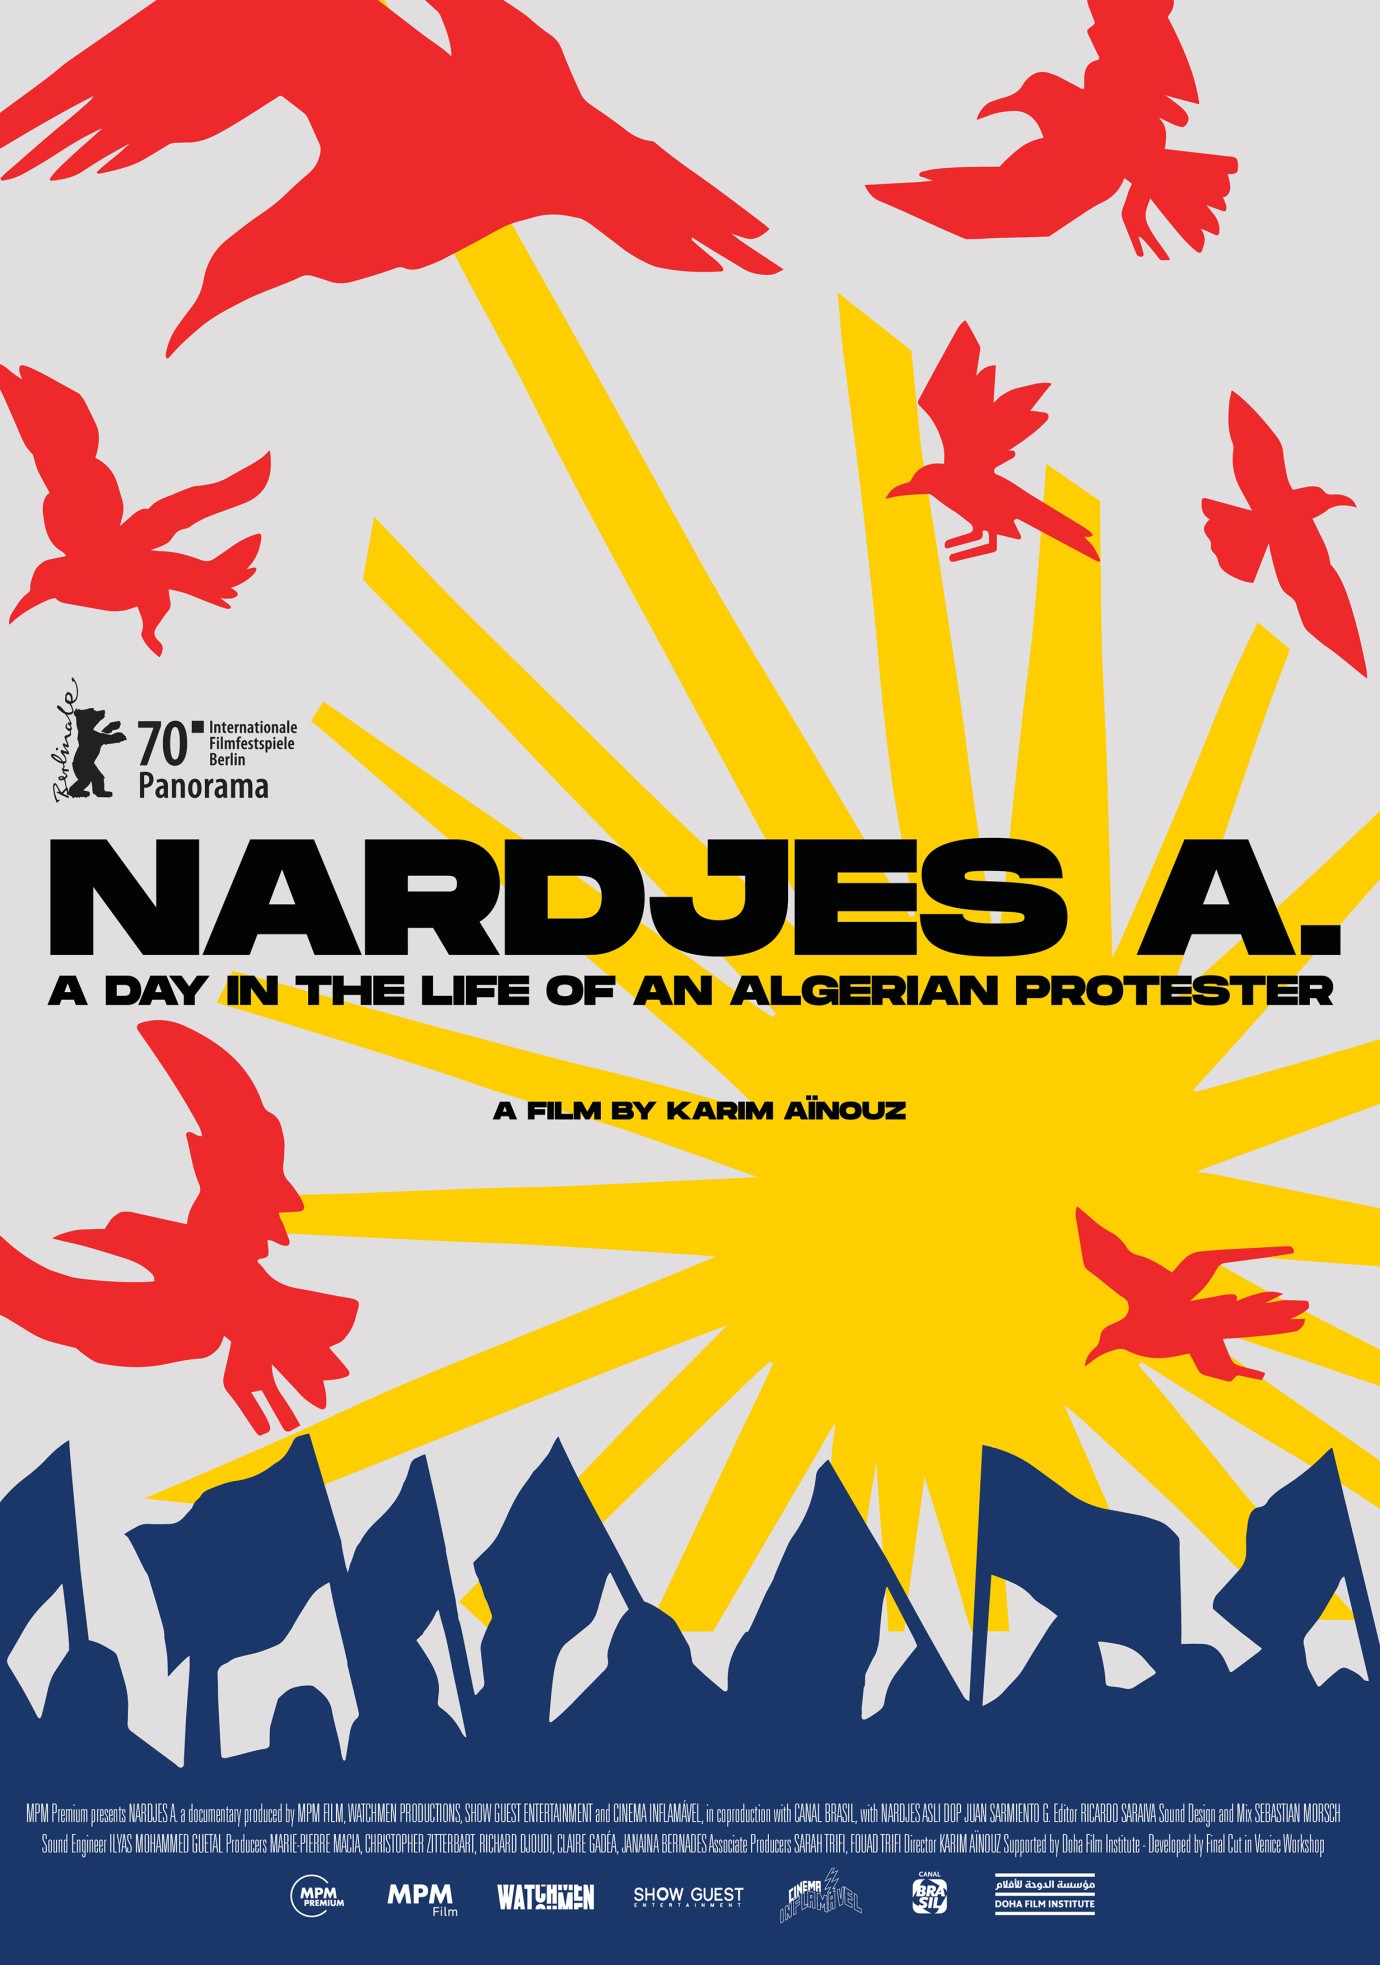 Kinoplakat "Nardjes A." von Karim Aïnouz